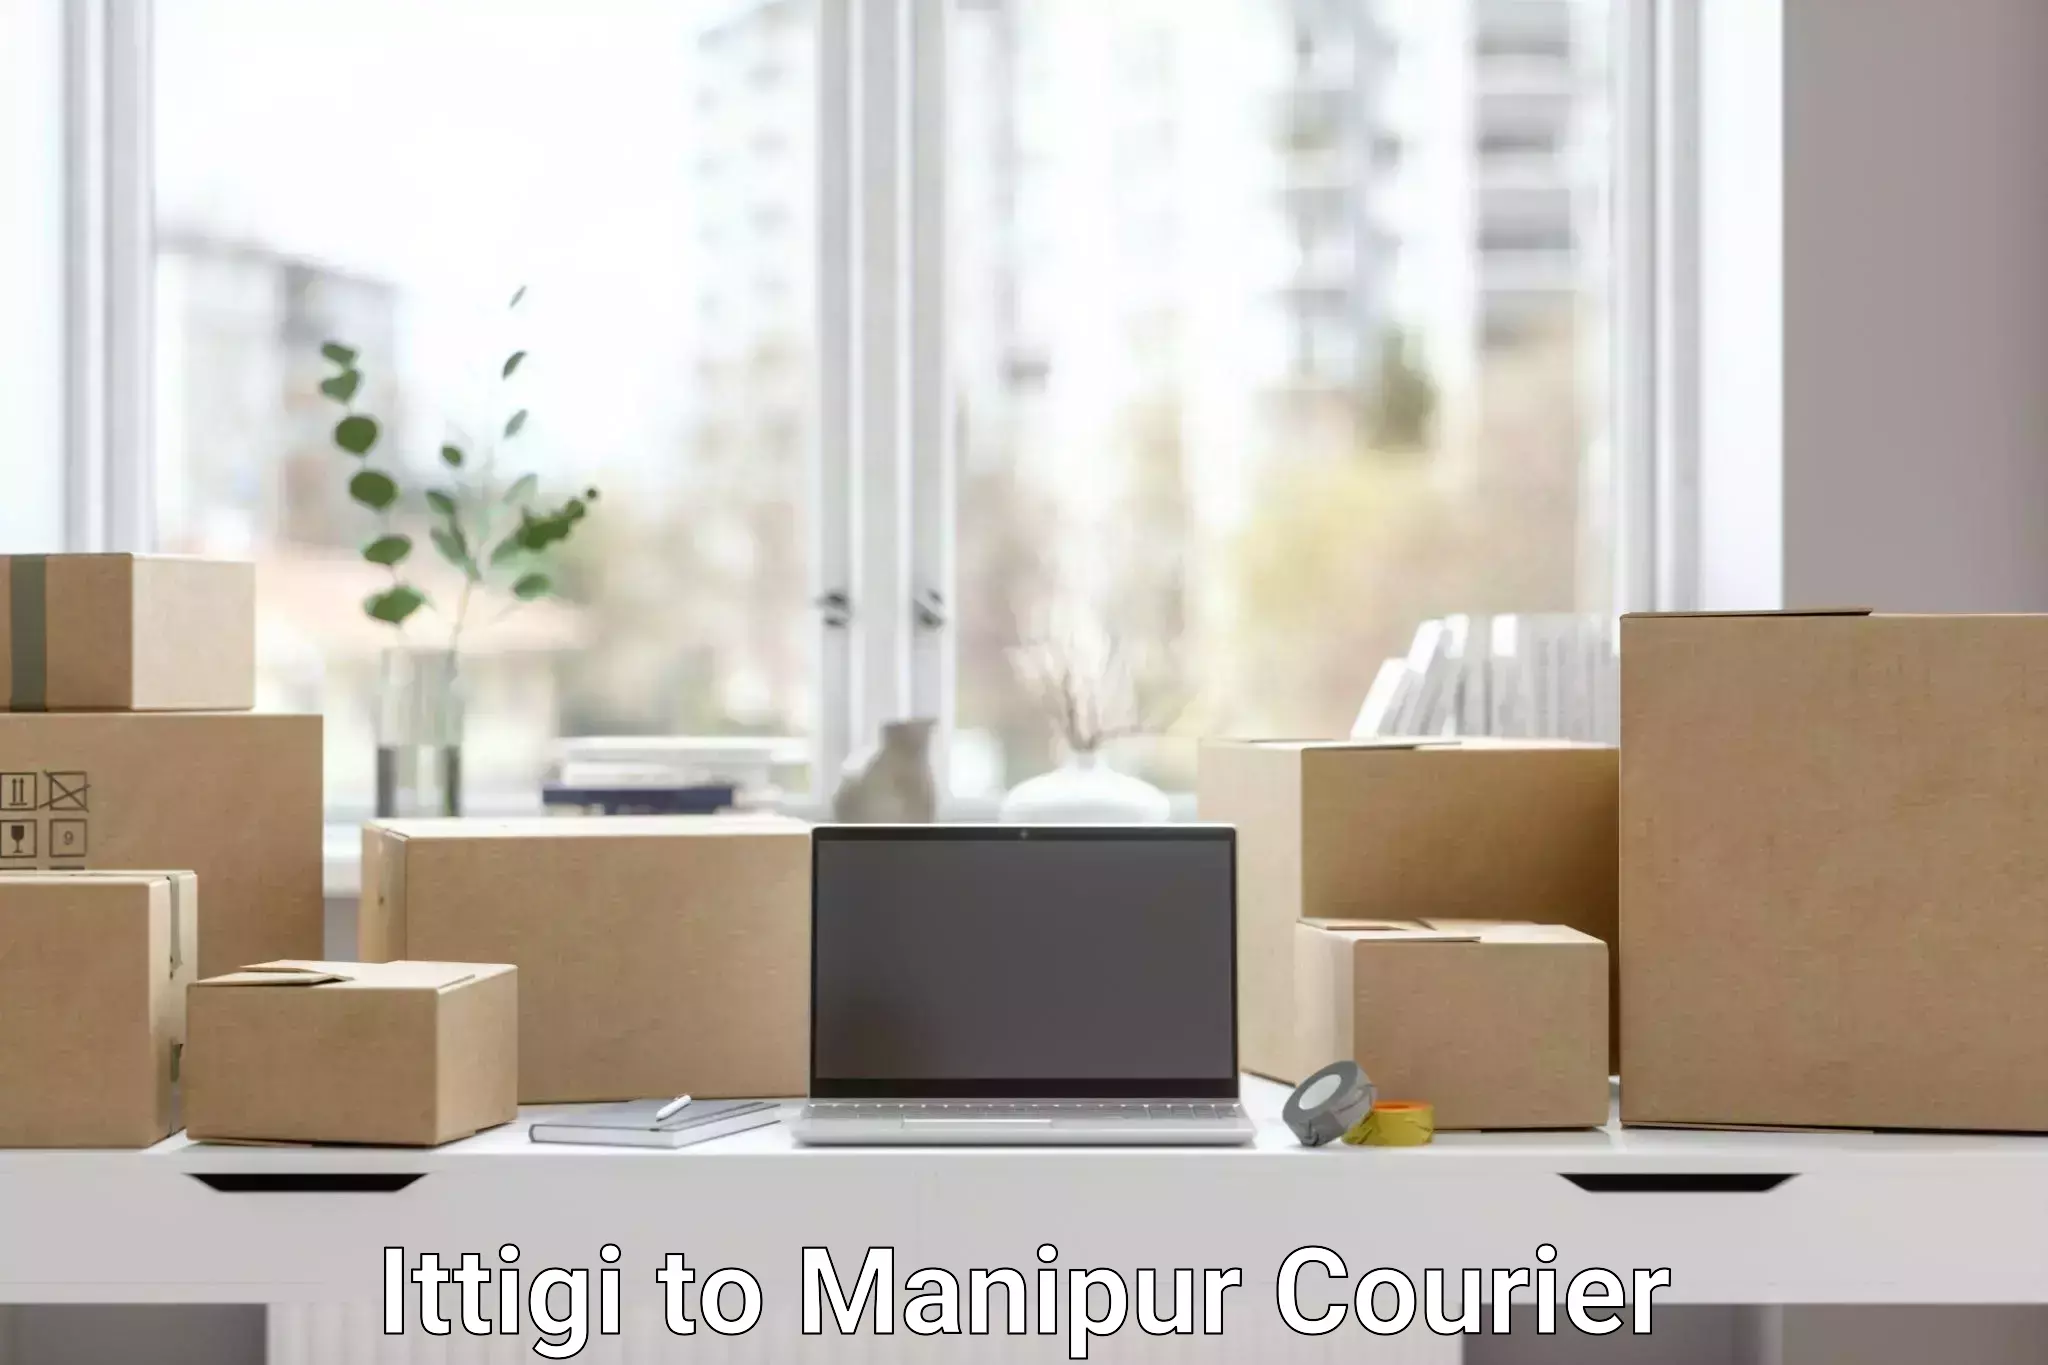 Customer-oriented courier services Ittigi to Moirang